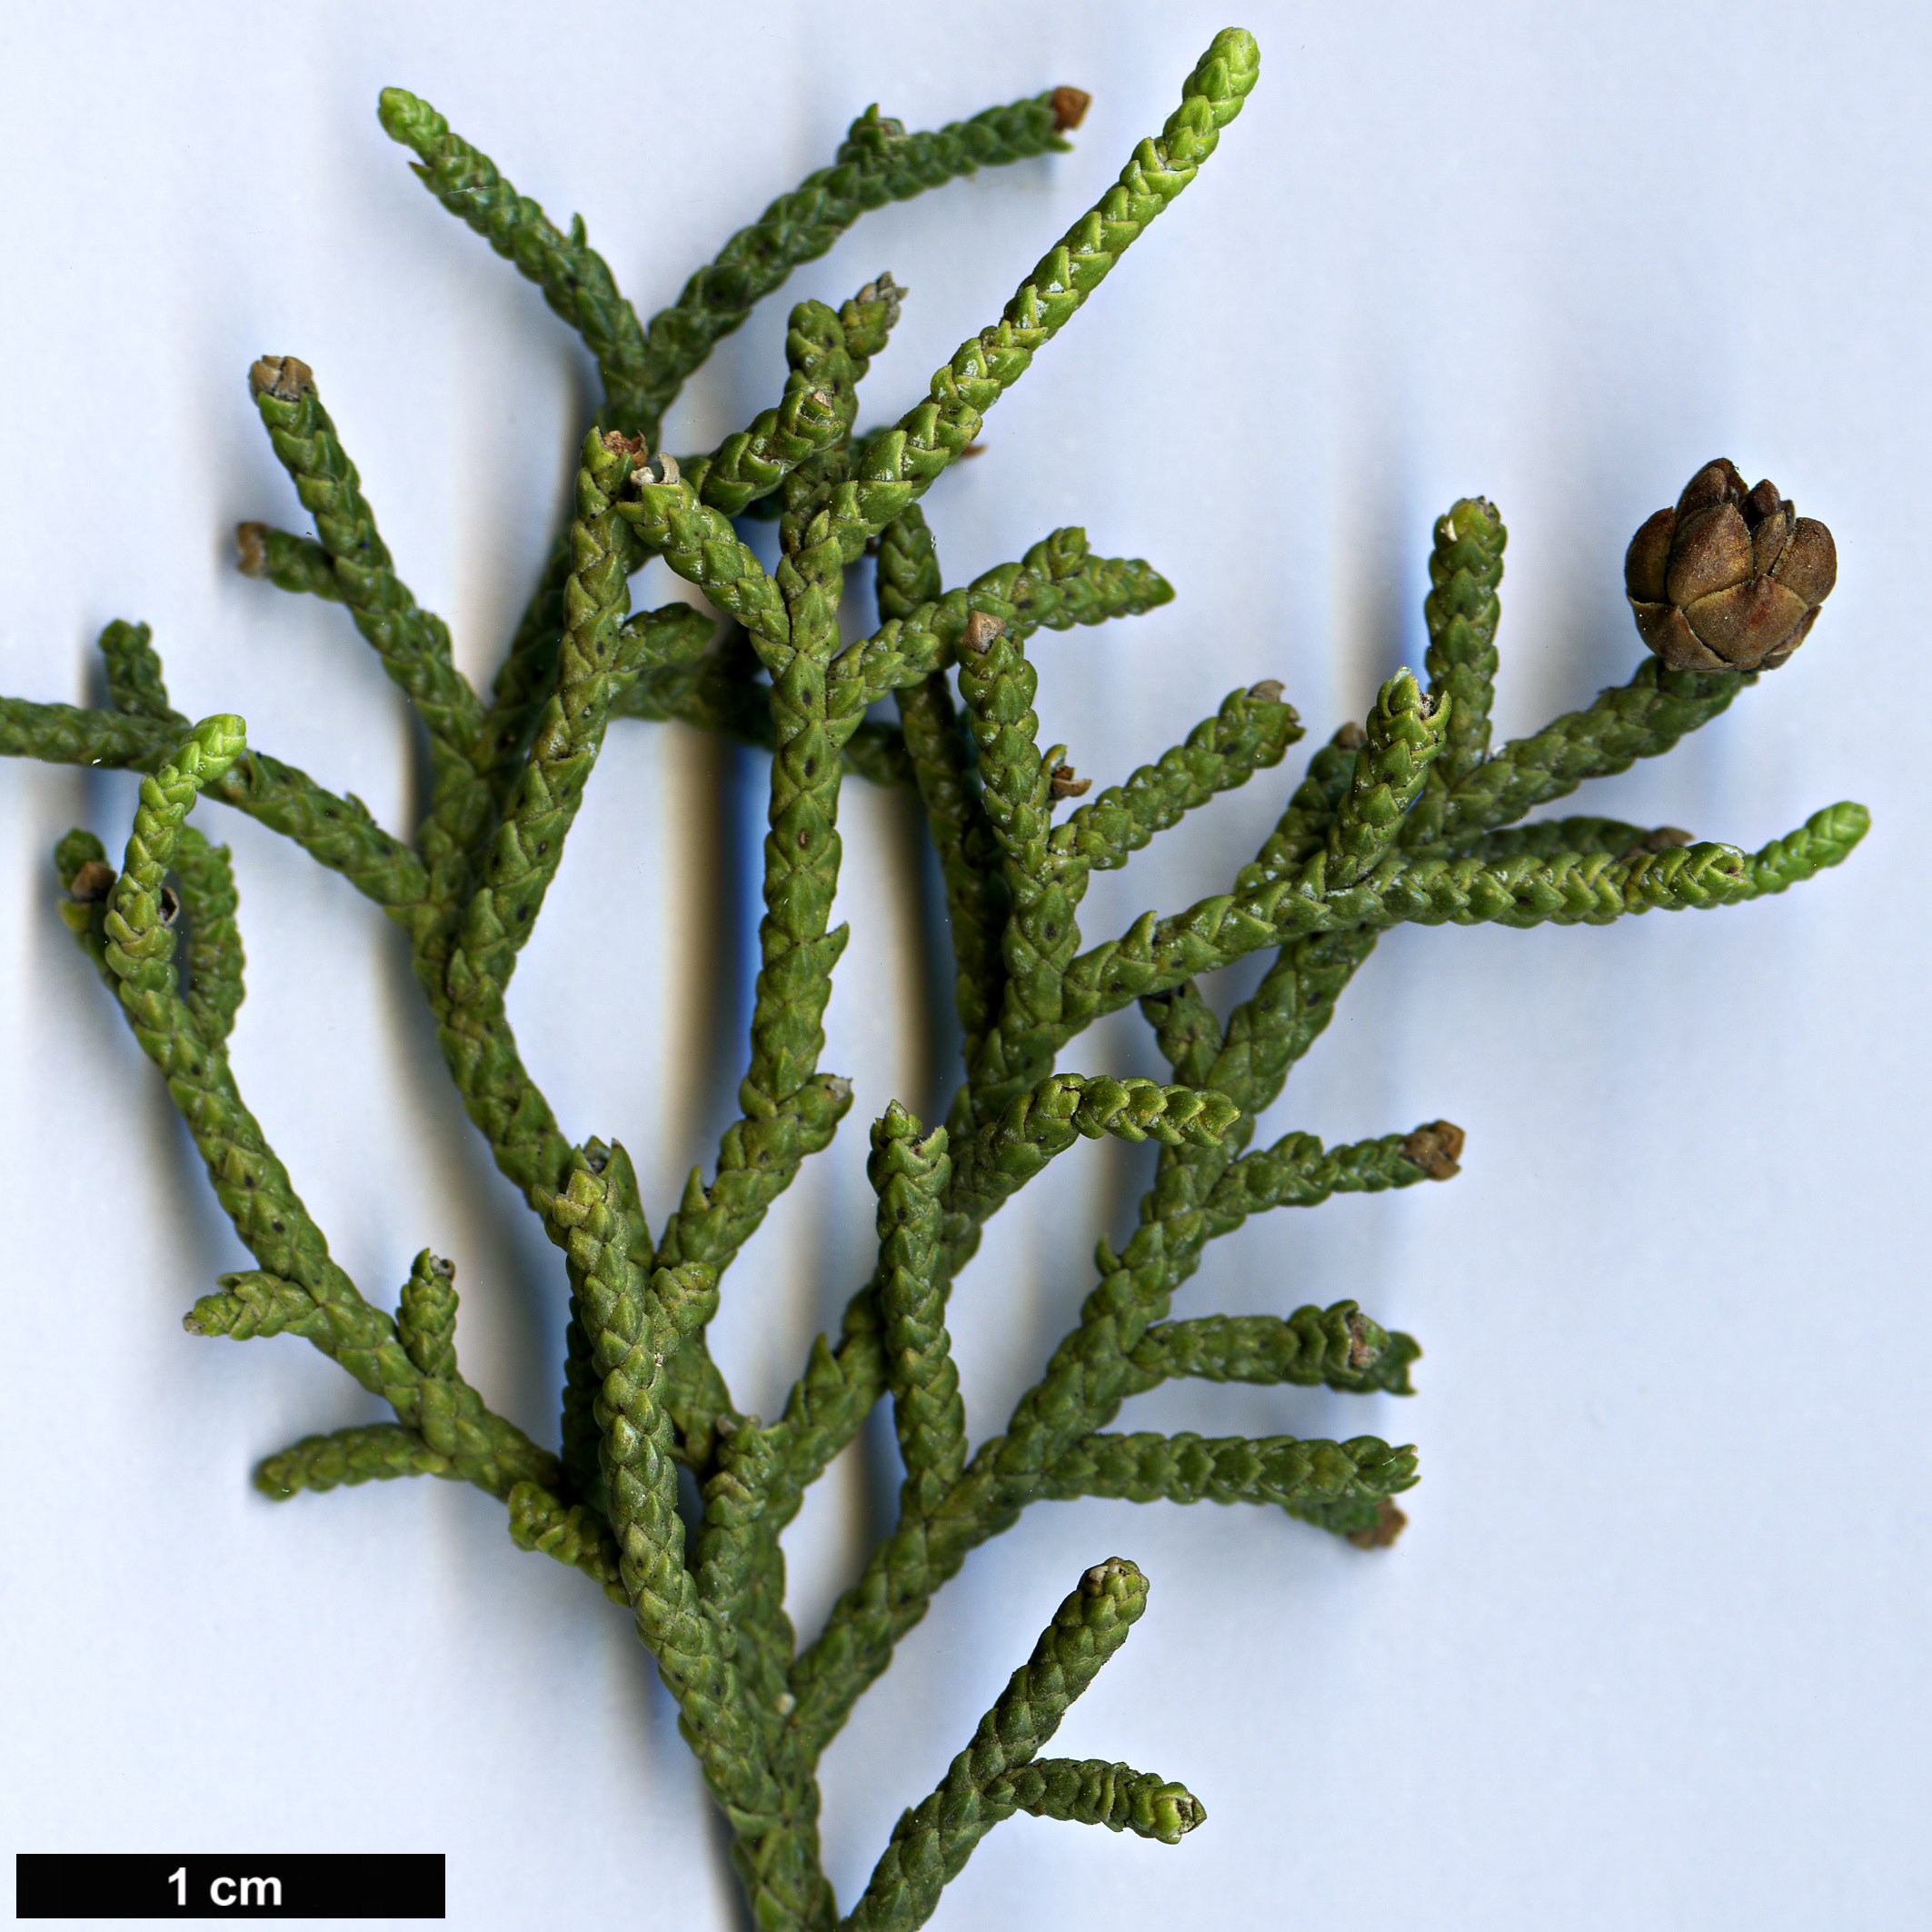 High resolution image: Family: Cupressaceae - Genus: Juniperus - Taxon: californica